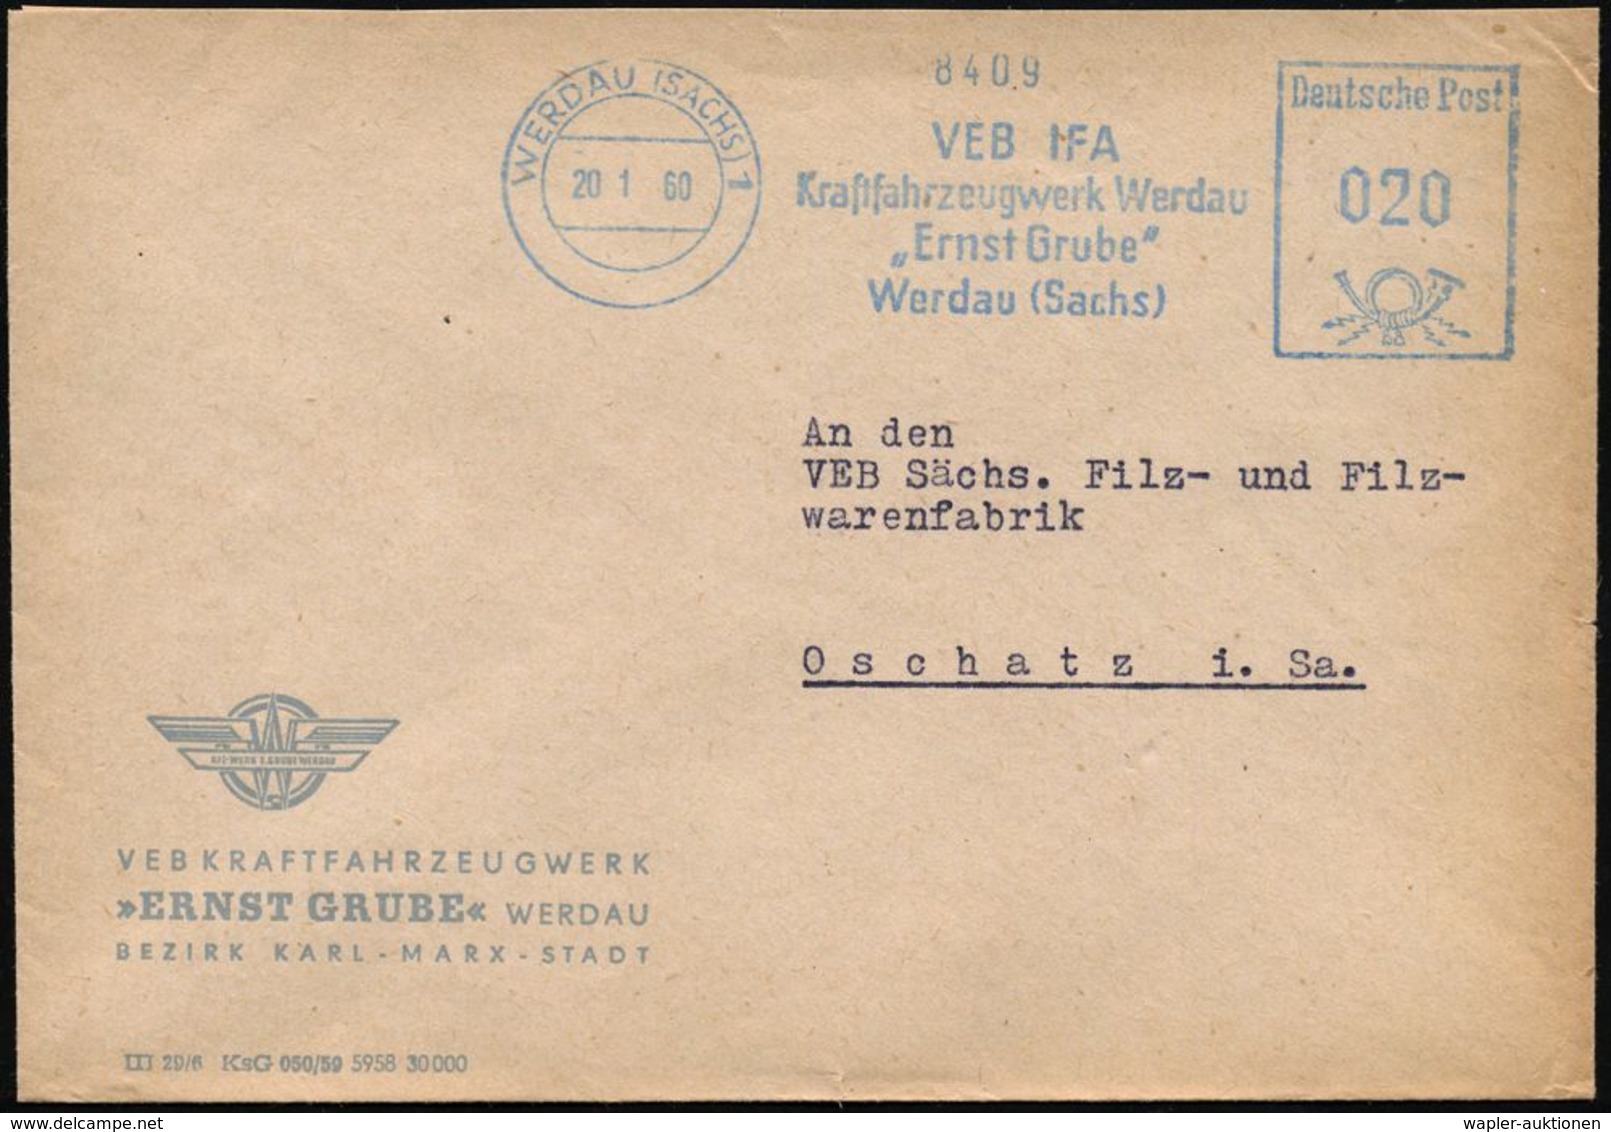 WERDAU (SACHS) 1/ VEB IFA/ Kraftfahrzeugwerk../ "Ernst Grube" 1960 (20.1.) Blauer AFS = Vormals Fa. Schu-mann, Lizenz "V - Automobili